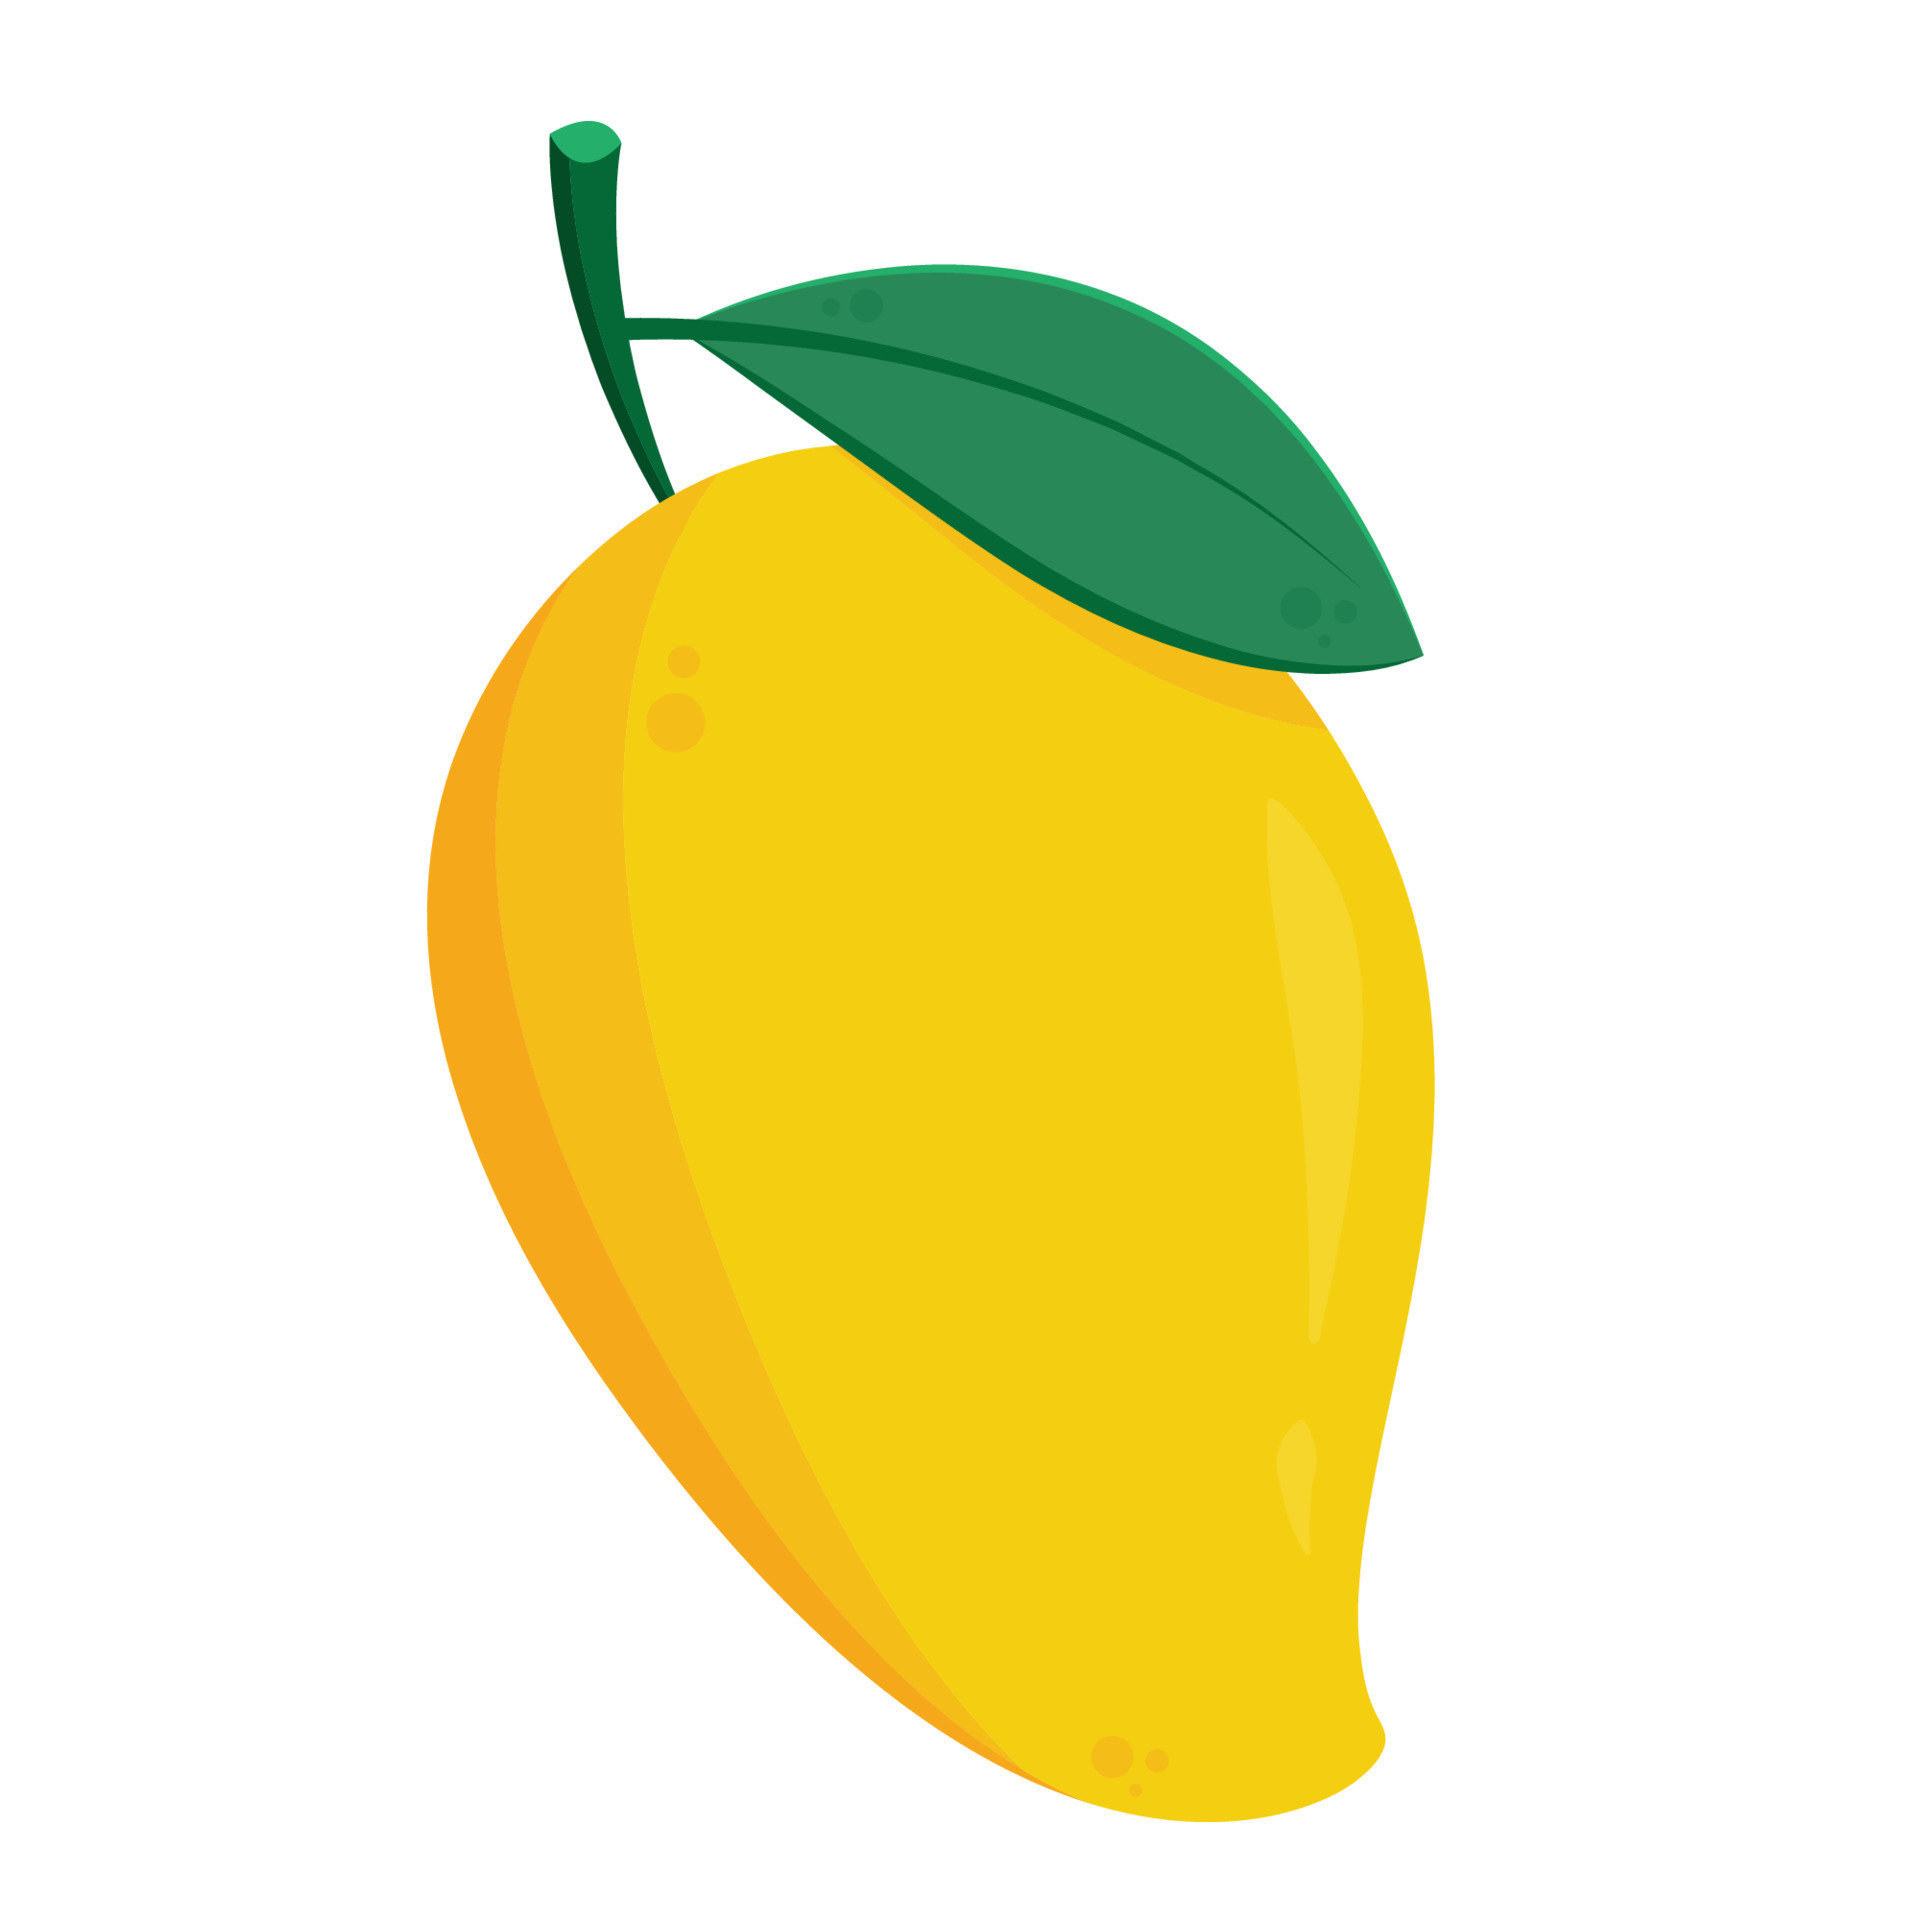 Mango vector. Mango on white background. logo design. Mango cartoon vector.  15845968 Vector Art at Vecteezy